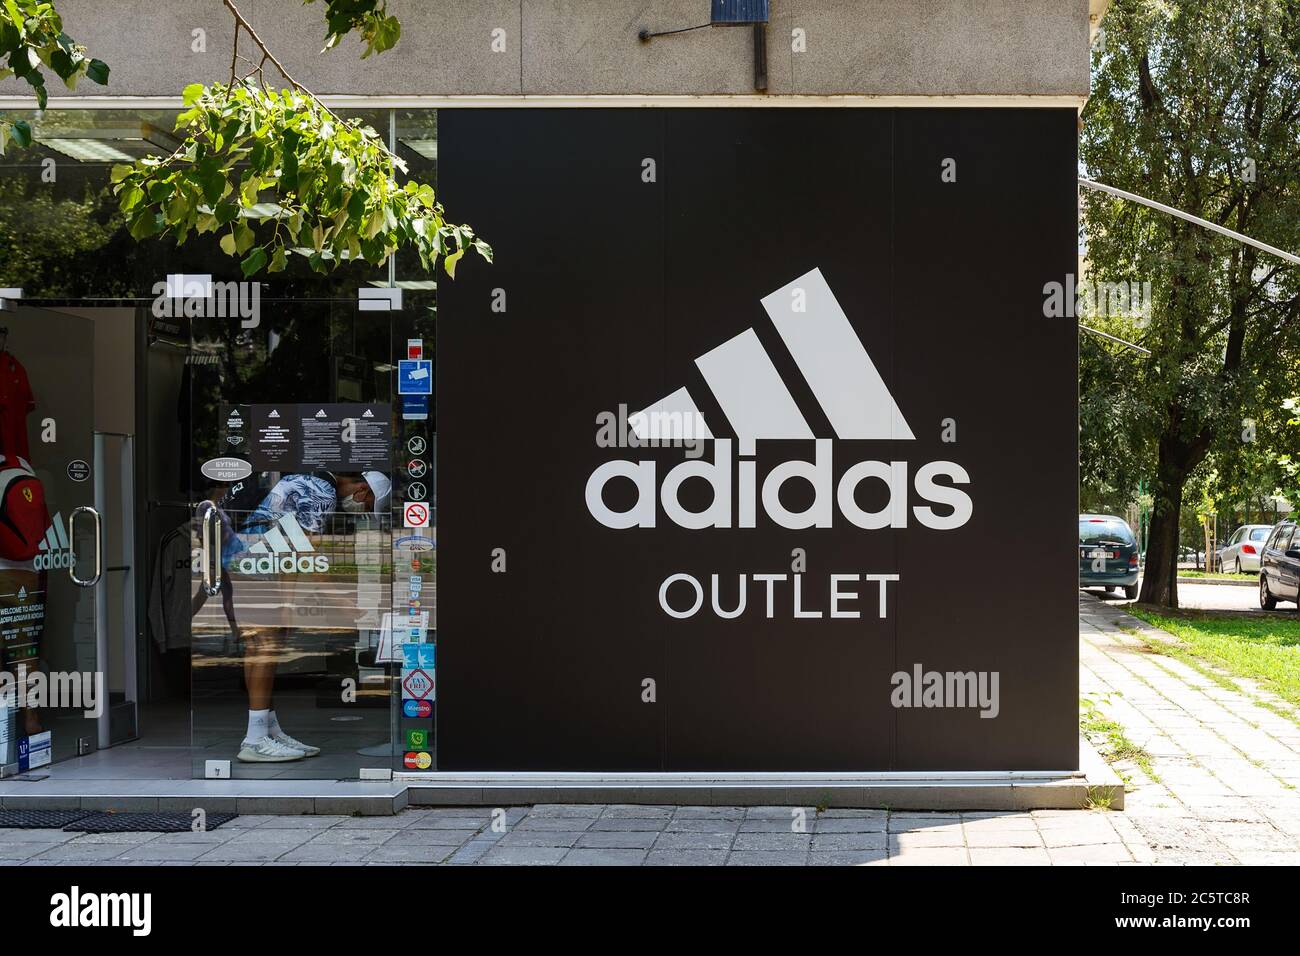 Bulgaria, 01 de de 2020. Entrada a la tienda Adidas desde una calle de la en un soleado día de verano. Cartel de logo Adidas signo de brend